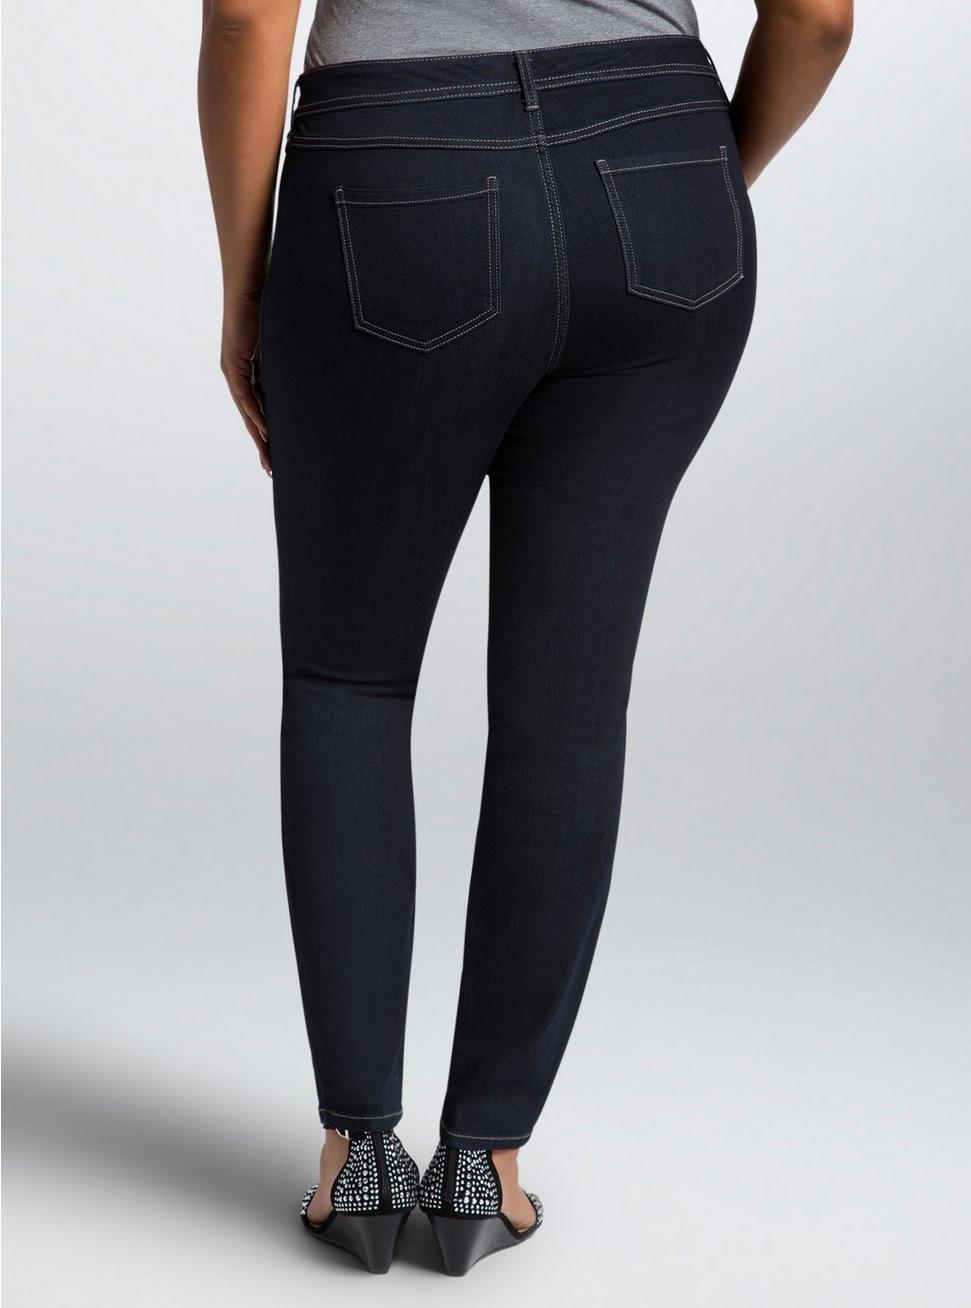 Plus Size - Torrid Luxe Skinny Jeans - Dark Rinse - Torrid